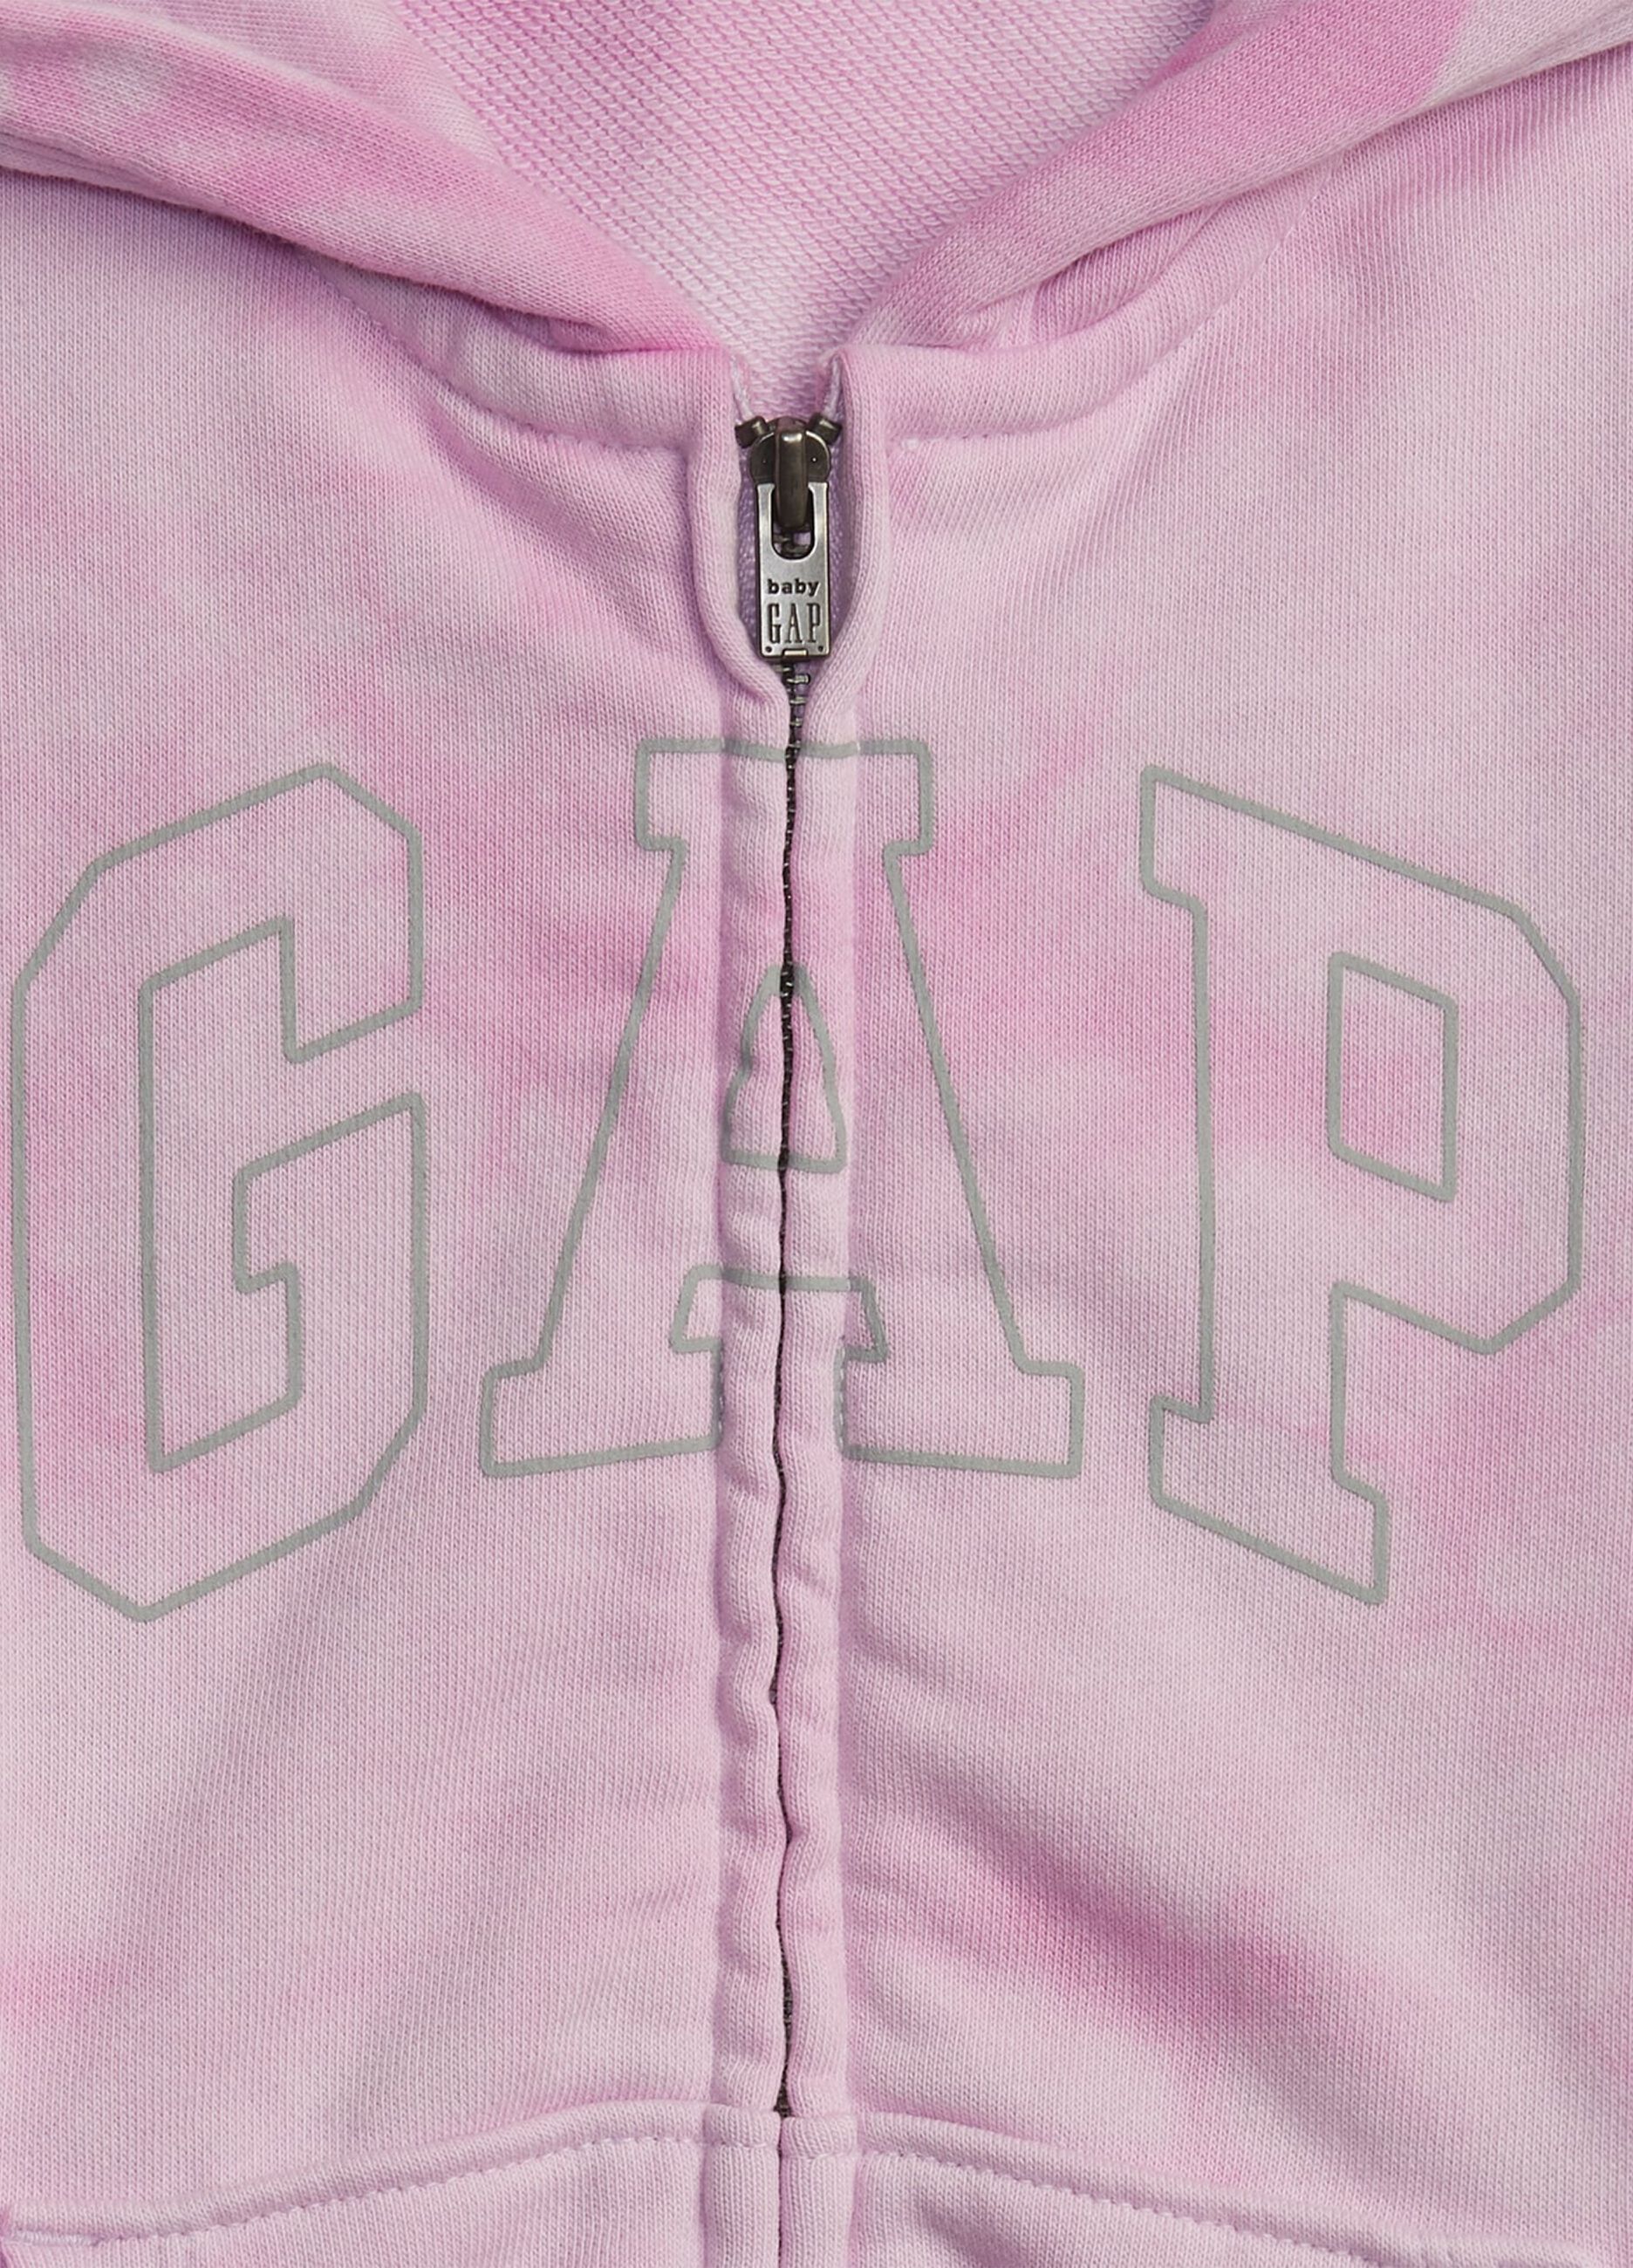 Full-zip Tie Dye hoodie with logo